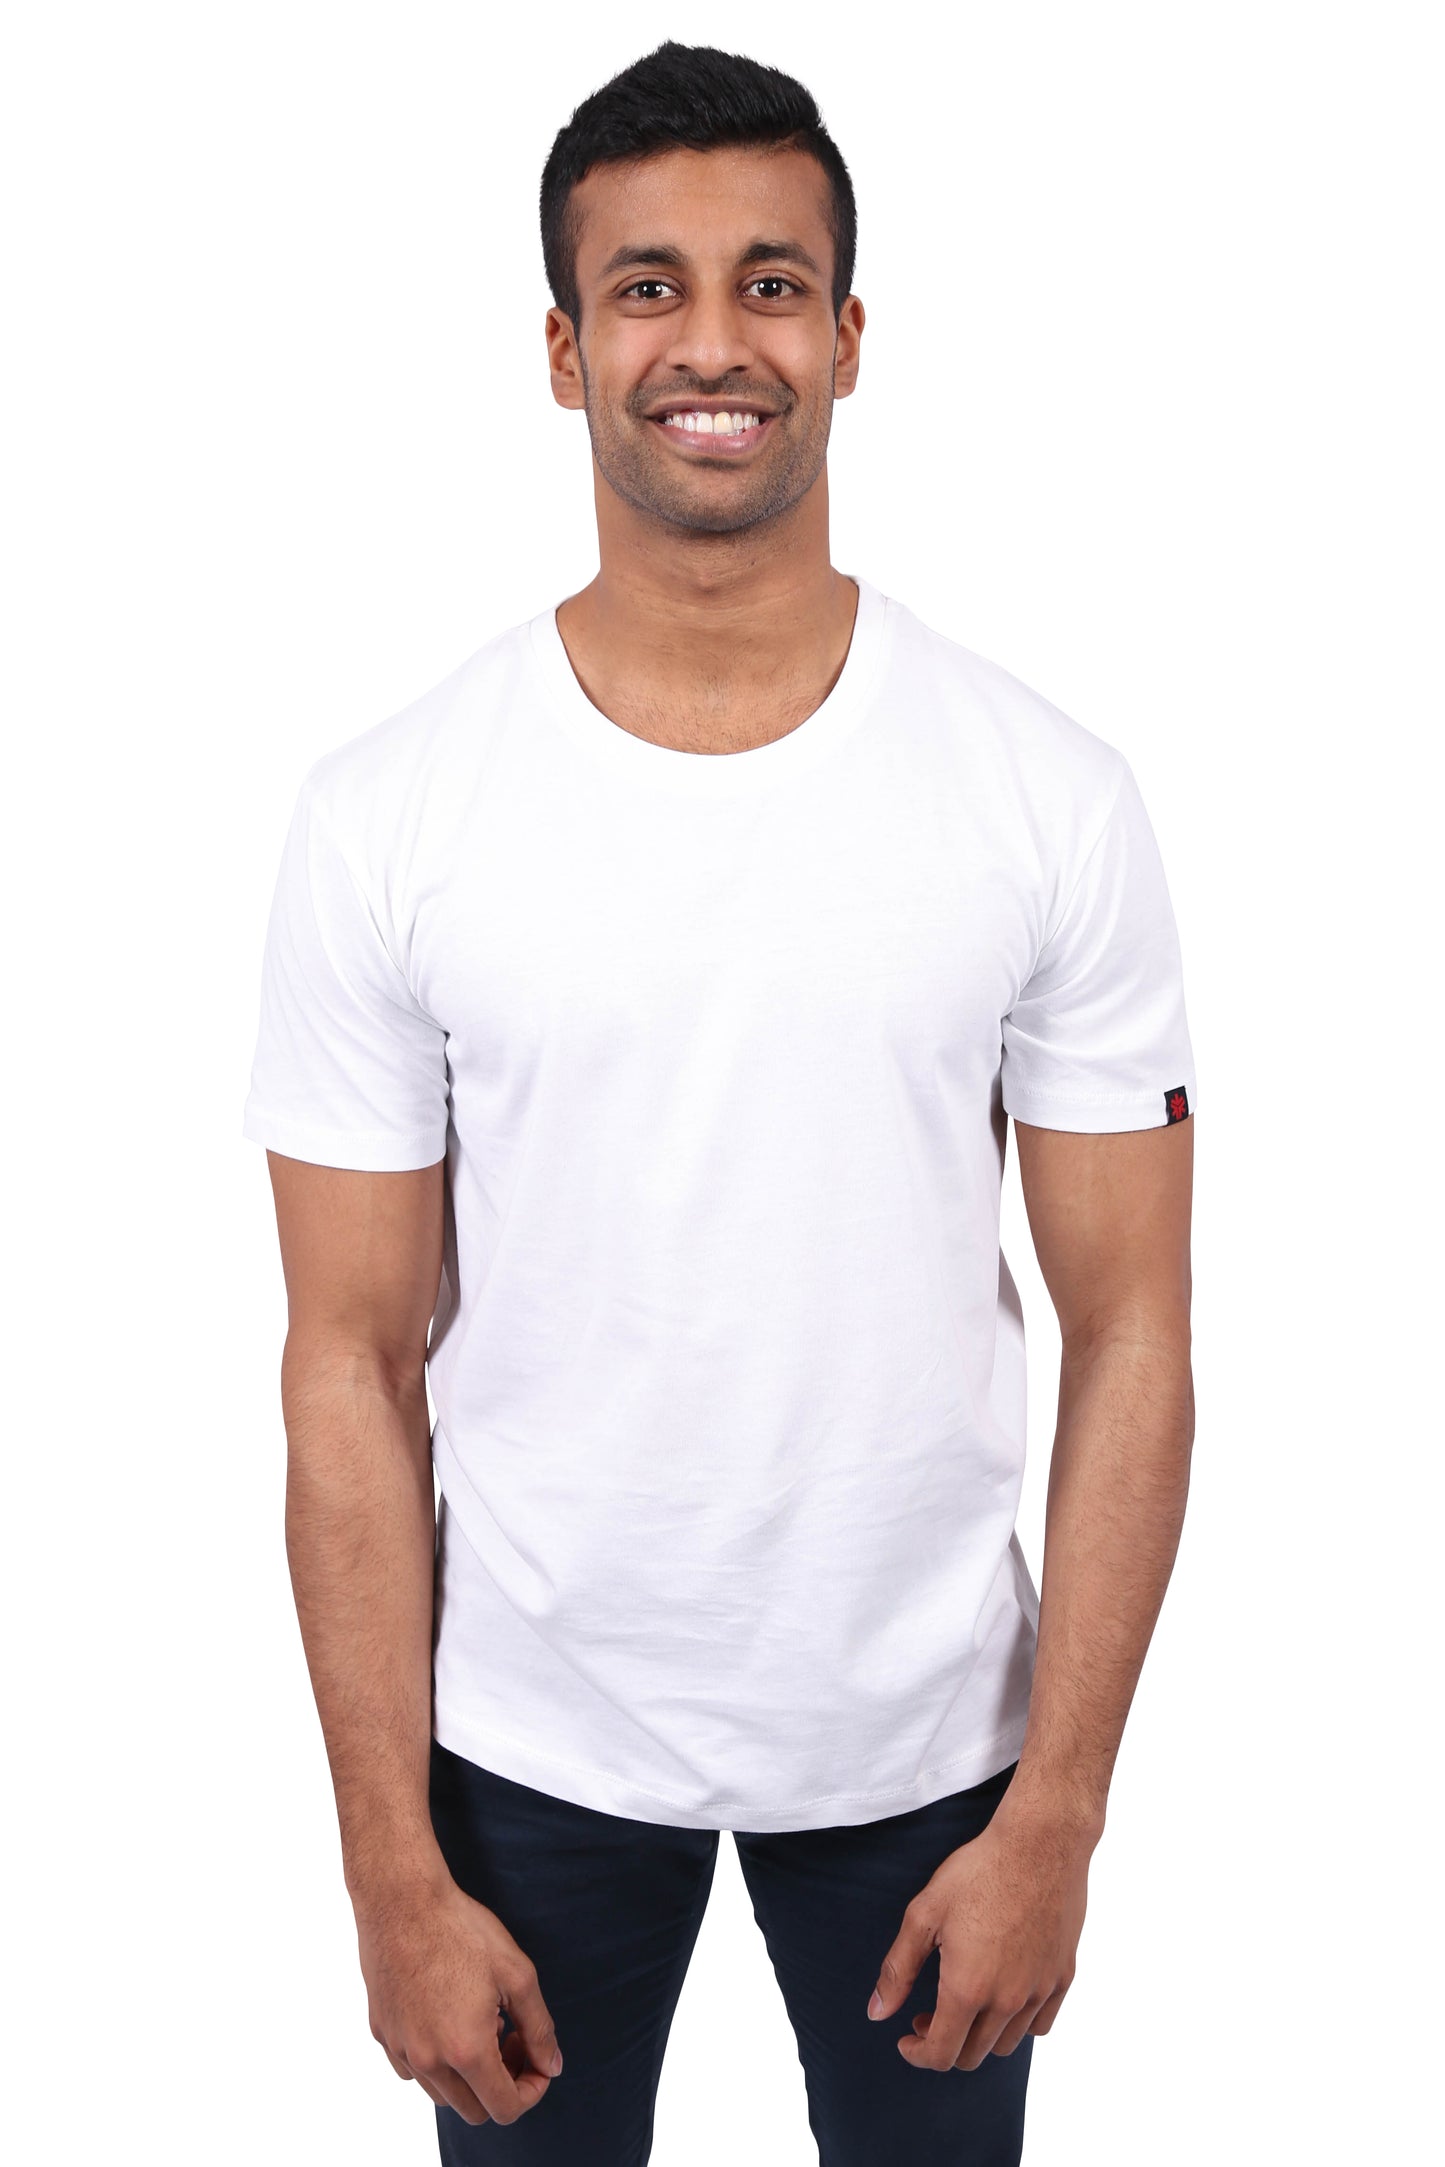 Organic Cotton T-Shirts Bundle (Black & White)